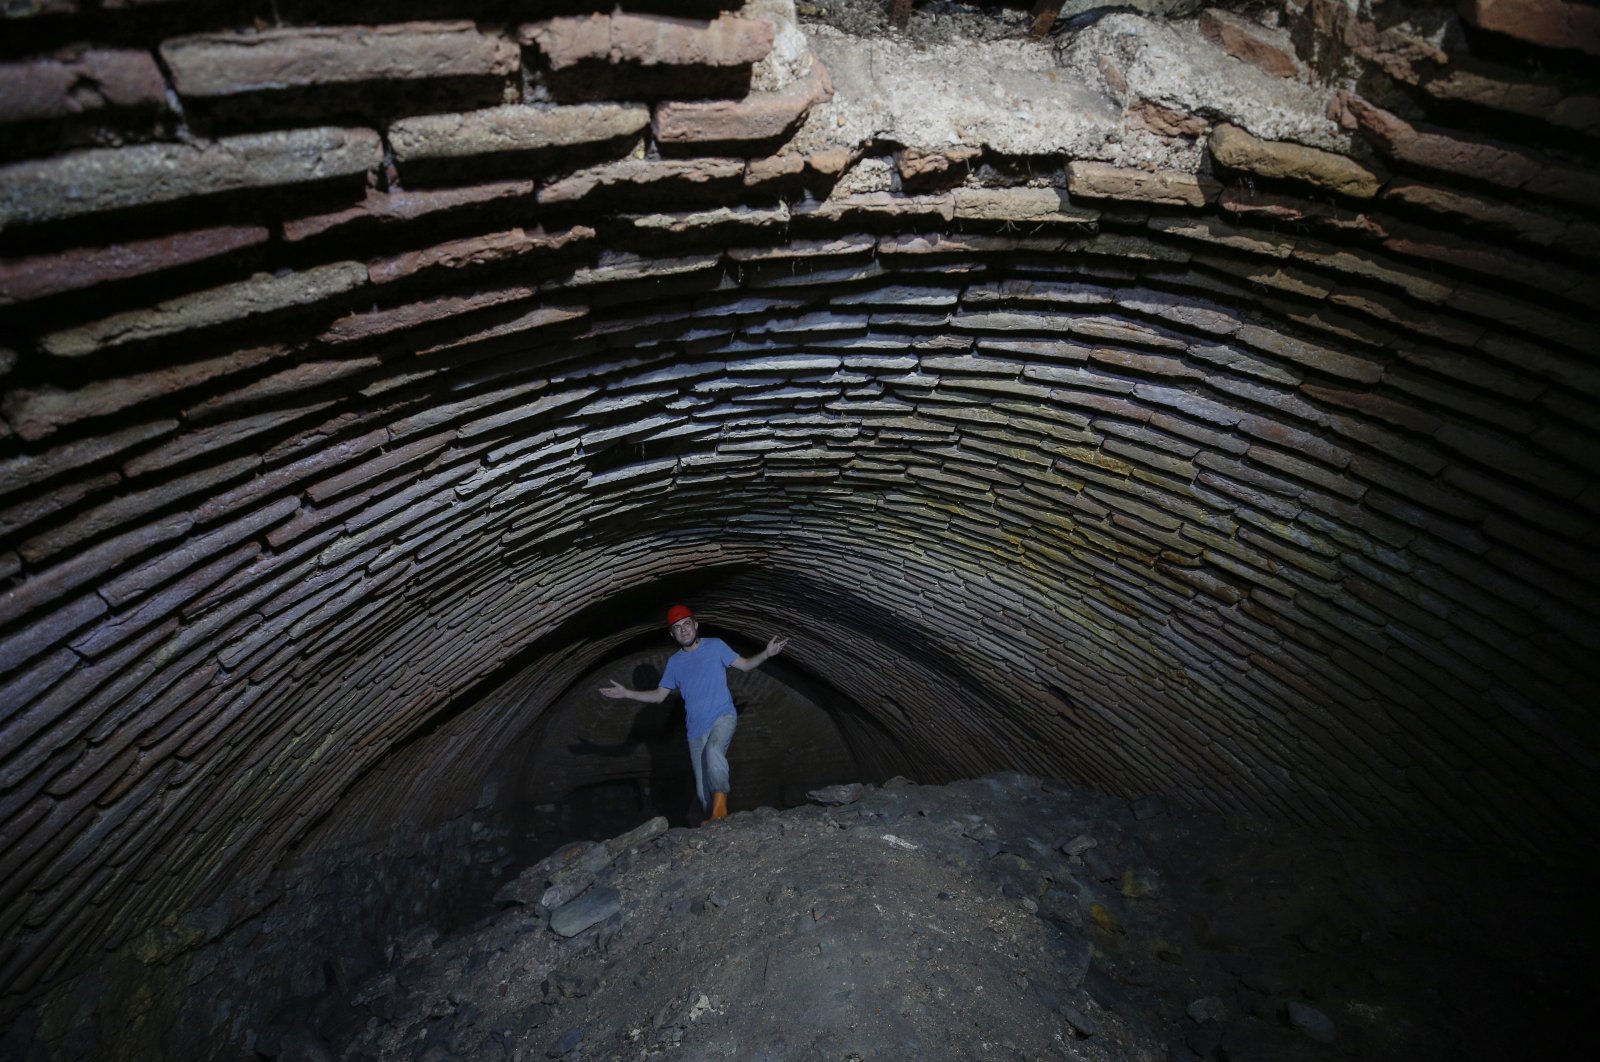 Di Bawah Hagia Sophia: Terowongan menjelaskan sejarah masjid Istanbul